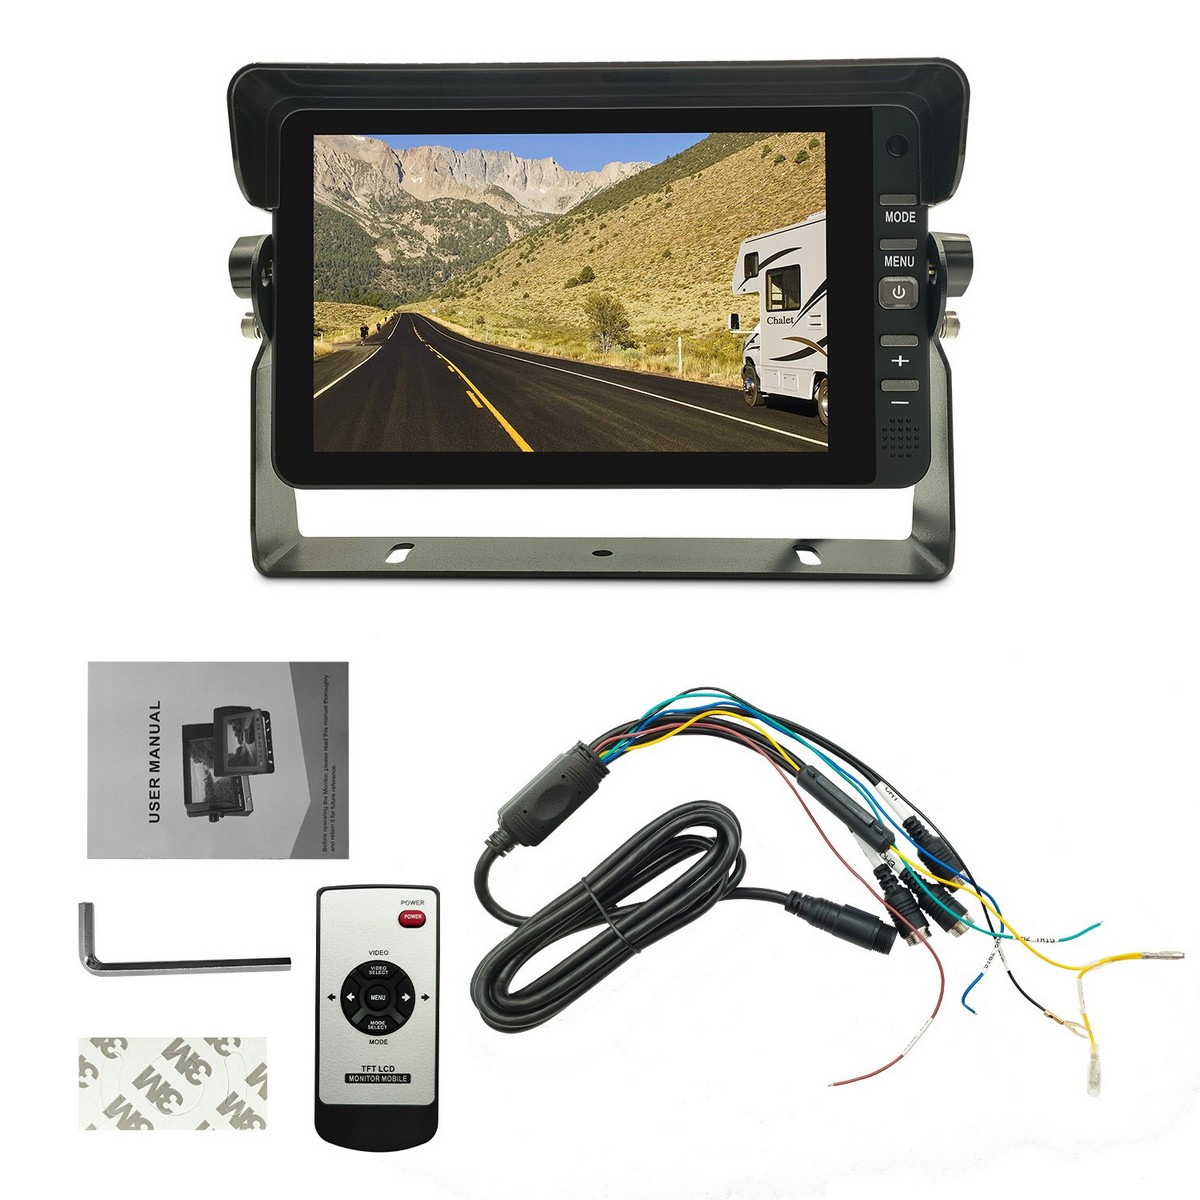 Monitor de coche de 3 canales resolución Full HD de 7 pulgadas